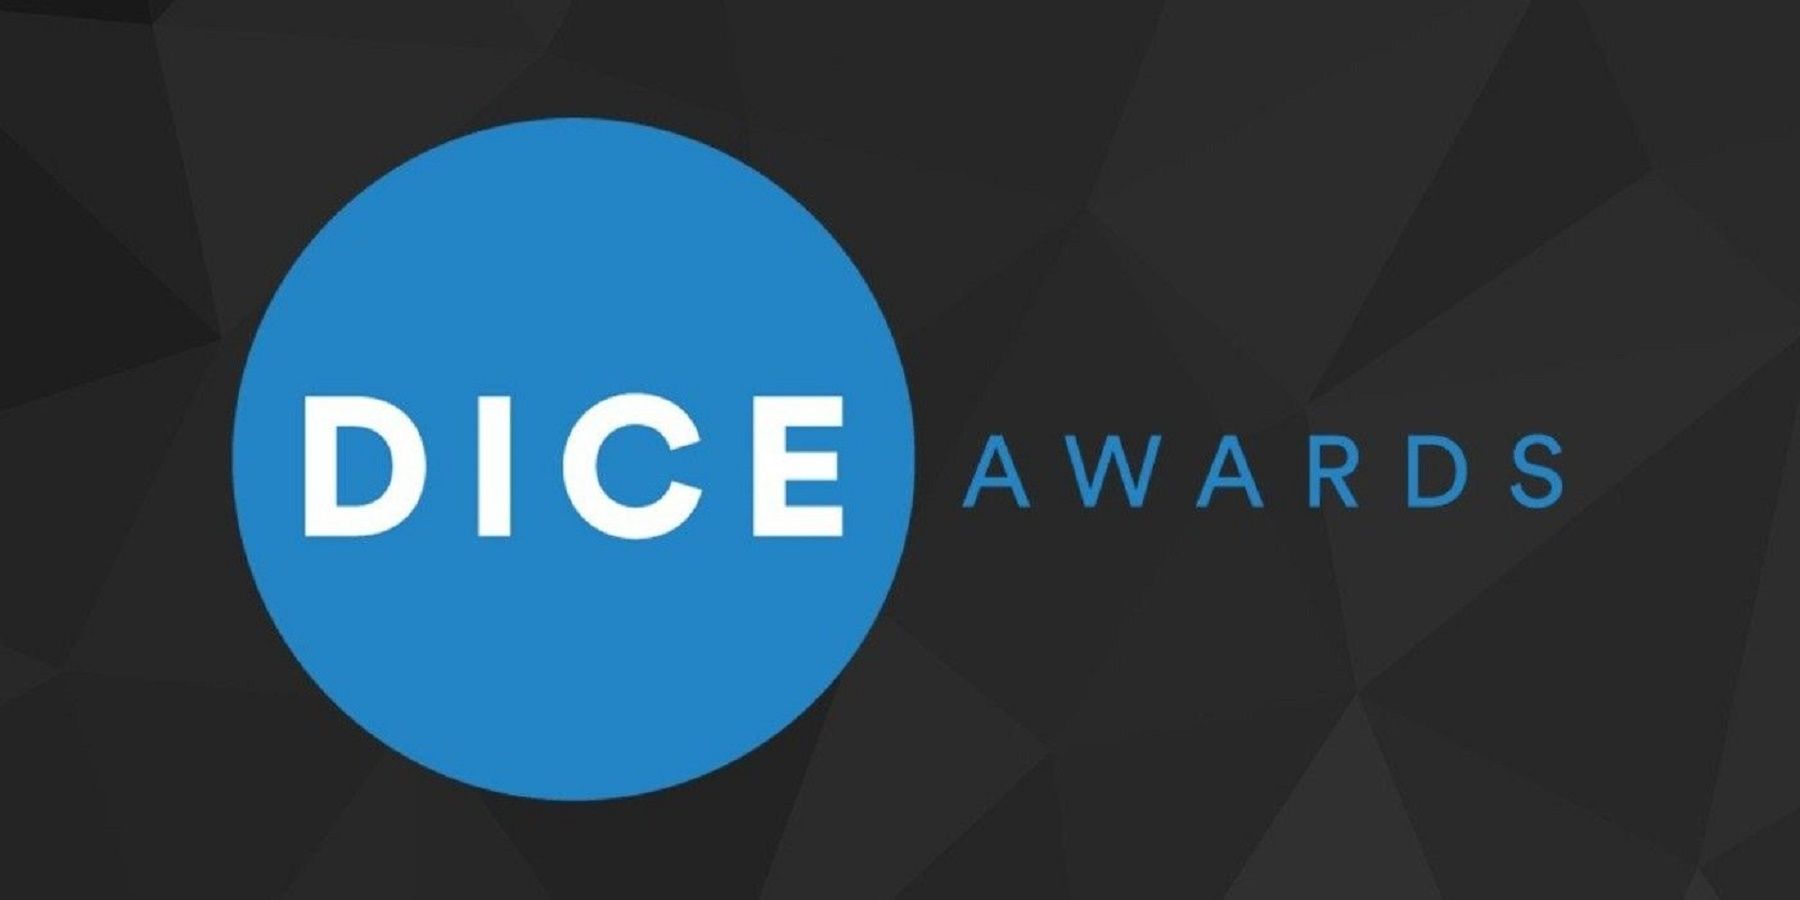 DICE awards logo black